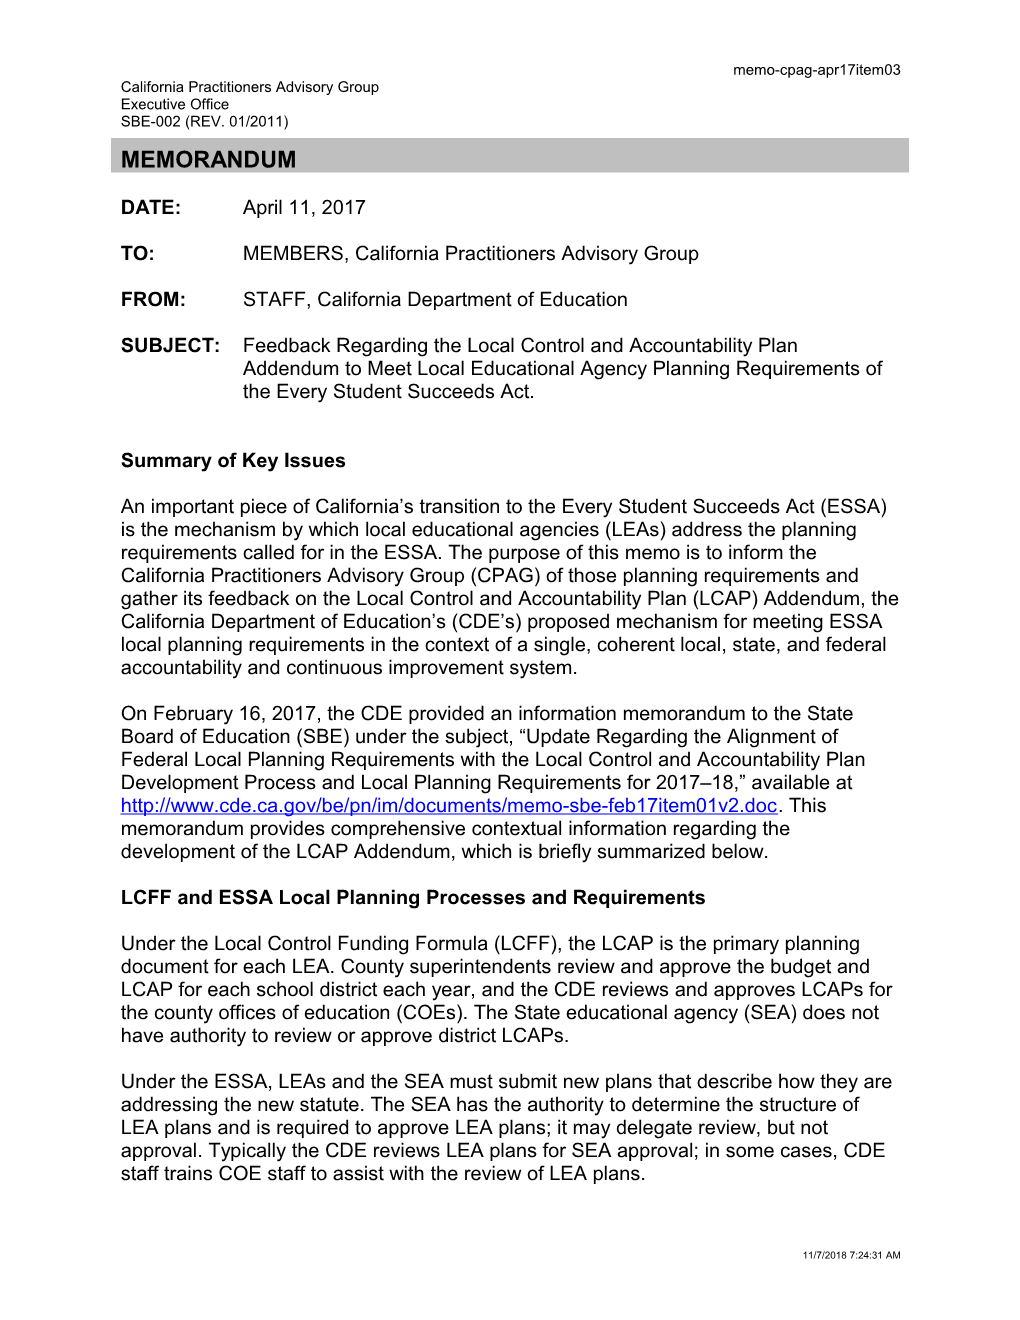 April 2017 Memorandum CPAG Item 03 - Information Memorandum (CA State Board of Education)